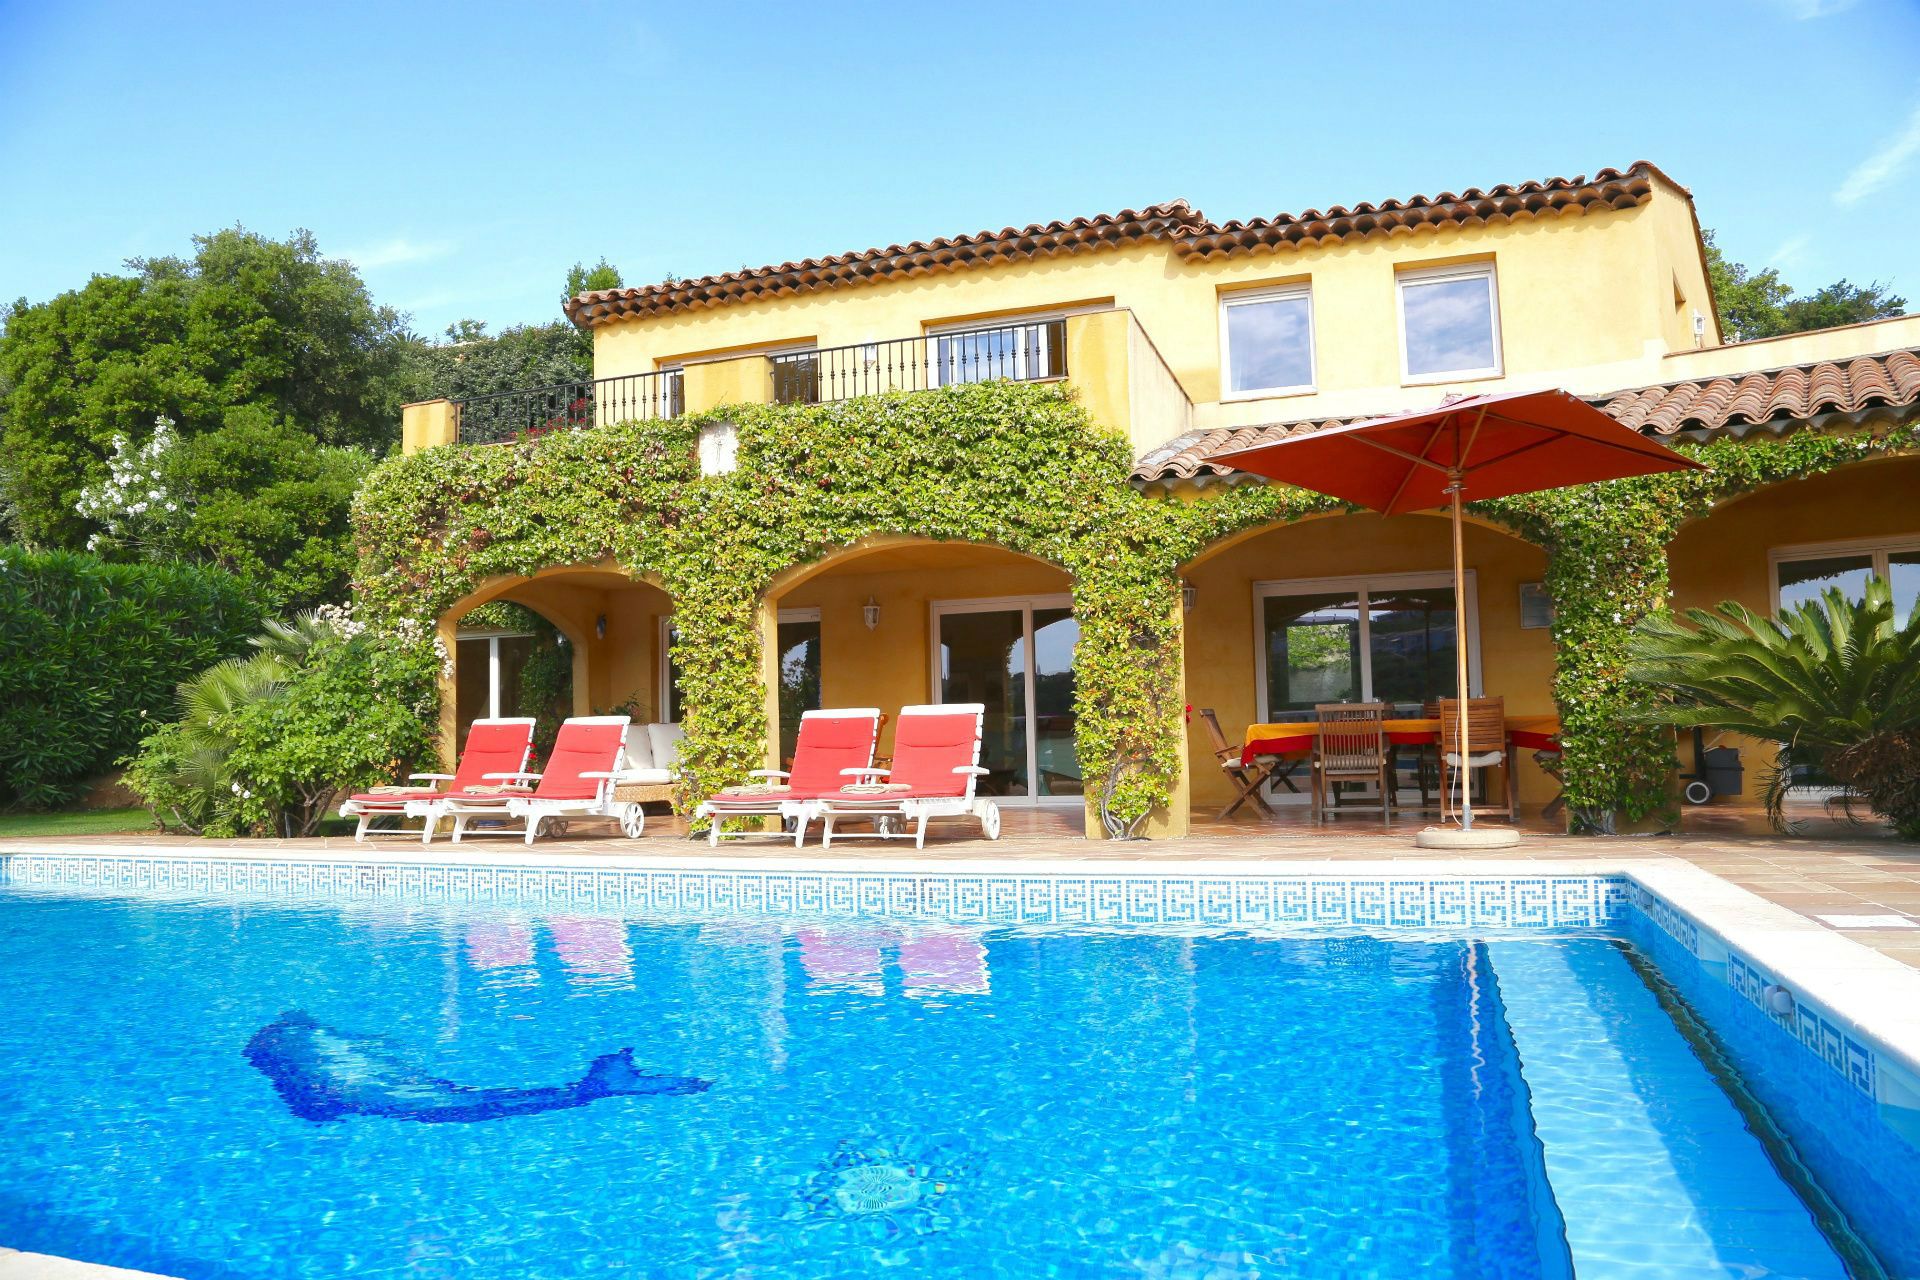 Méditerranée Location Villa with Private pool in Cavalaire sur Mer, Côte d'Azur